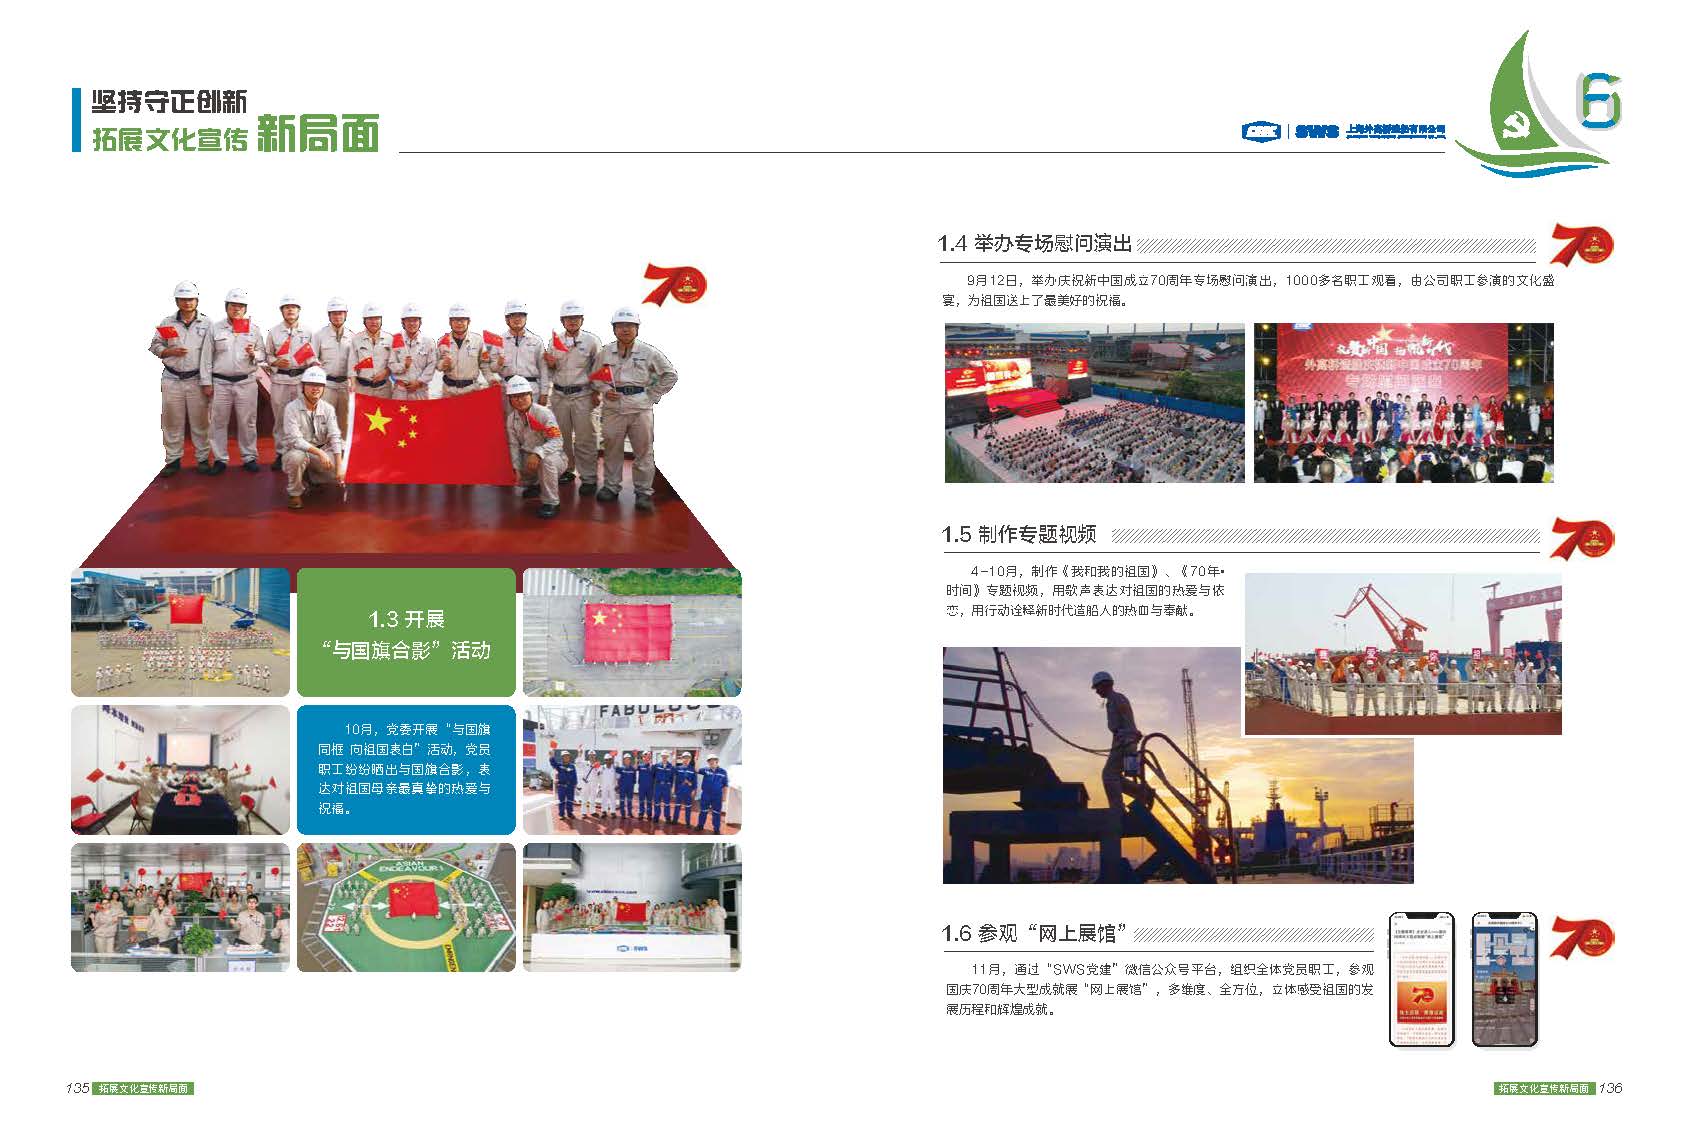 中国船舶集团上海外高桥造船有限公司《外高桥造船2019年党建年报》